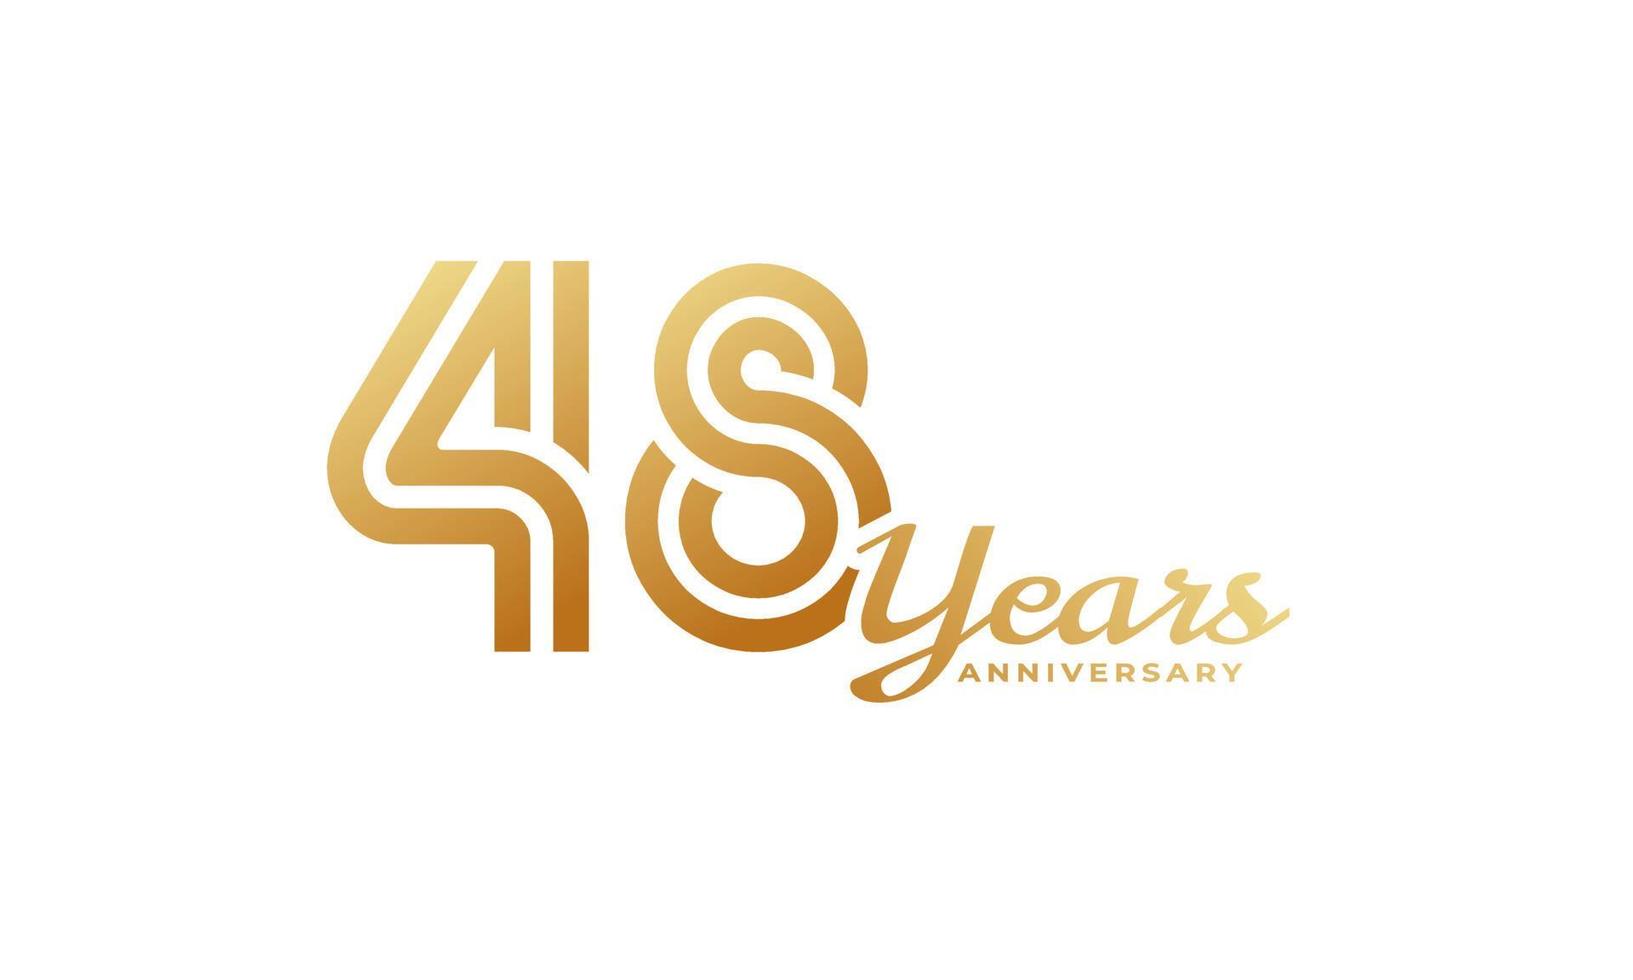 48-jarig jubileumfeest met handschrift gouden kleur voor feestgebeurtenis, bruiloft, wenskaart en uitnodiging geïsoleerd op een witte achtergrond vector